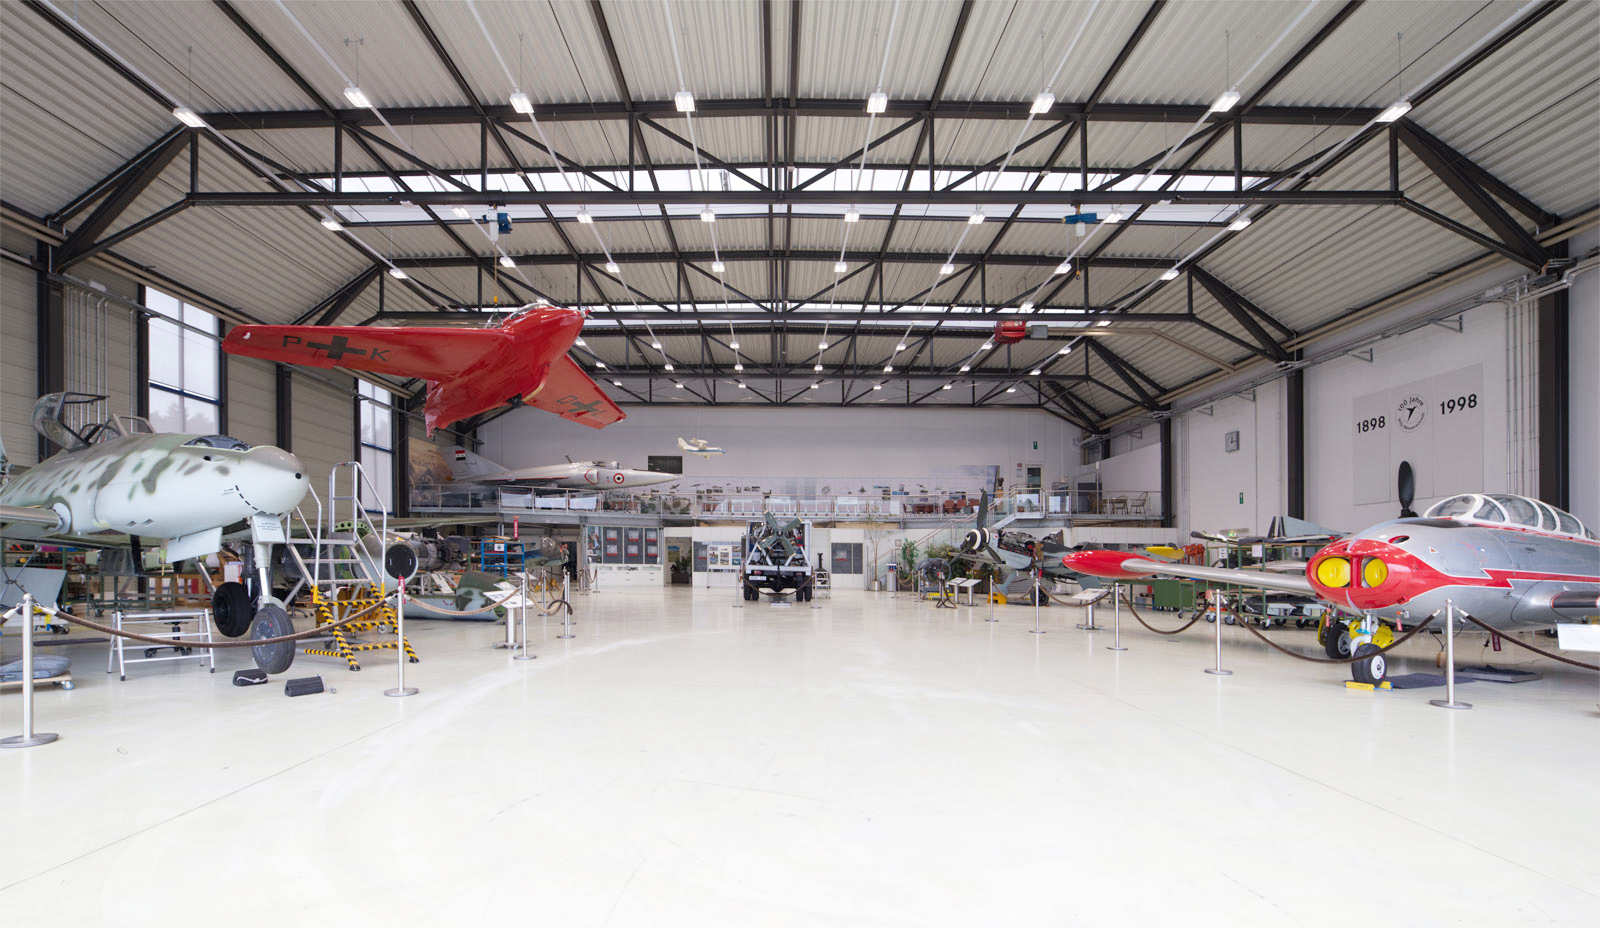 Flugmuseum Messerschmitt Museum of Flight